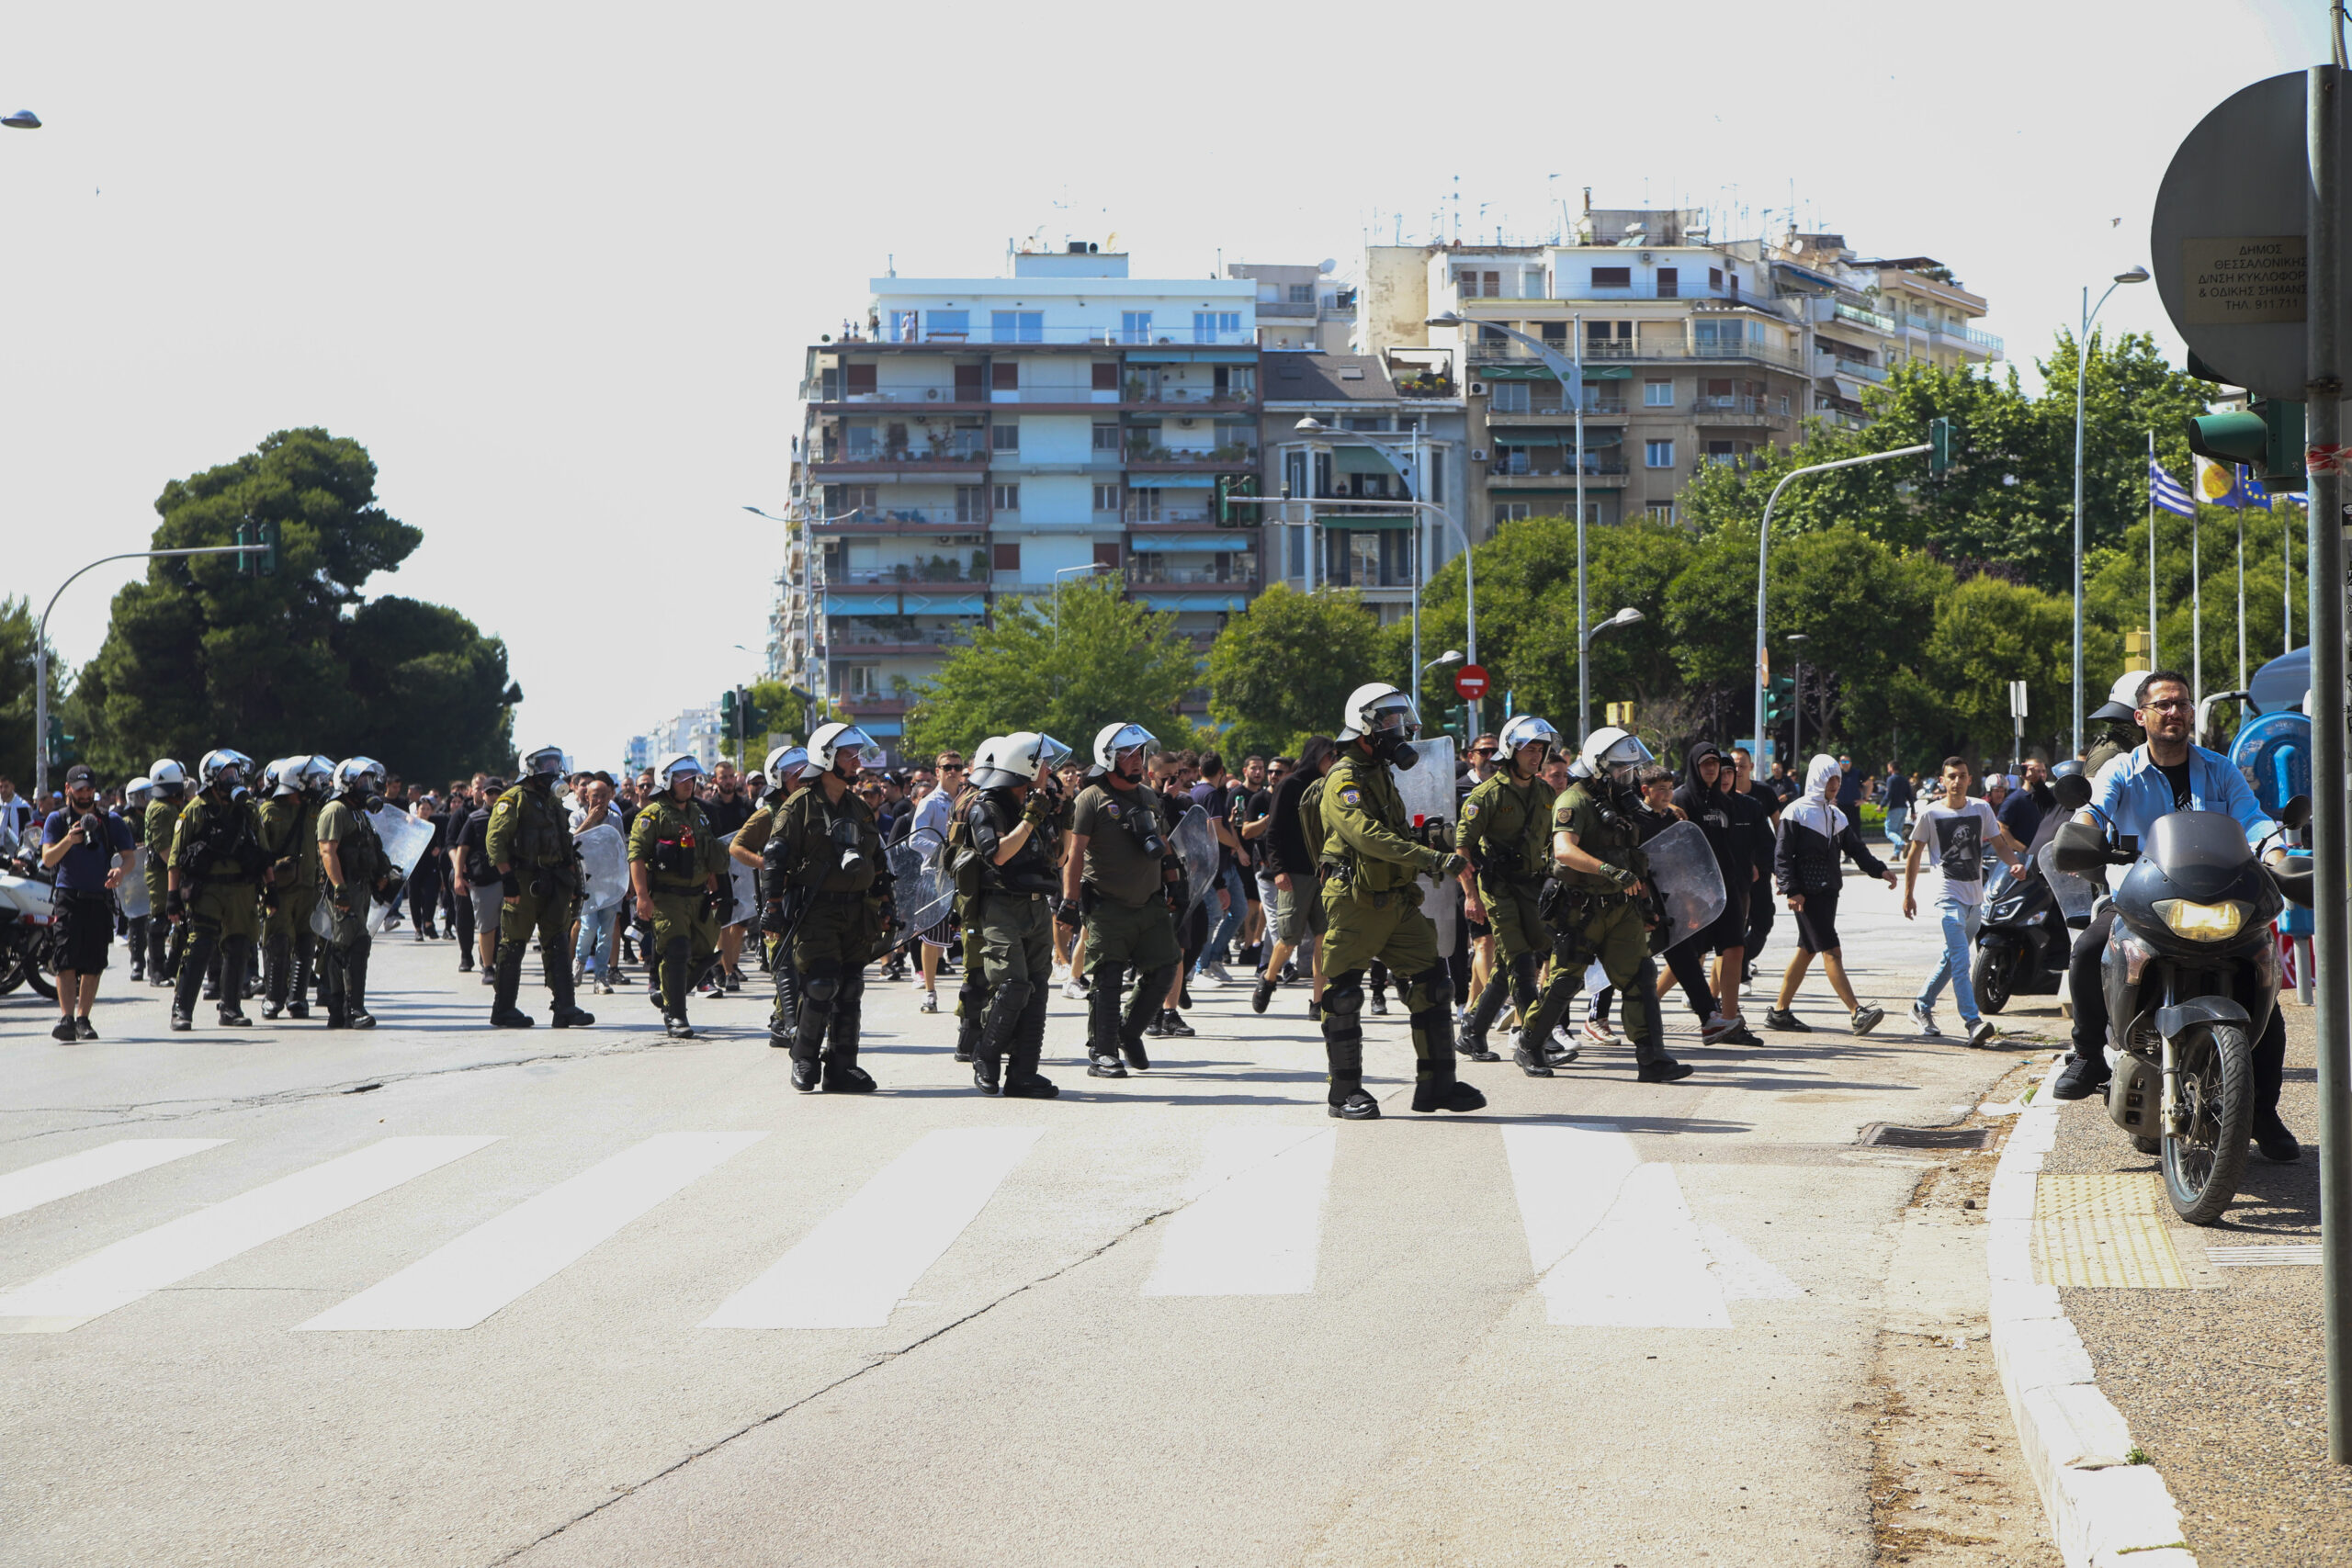 Θεσσαλονίκη: Επί ποδός η αστυνομία για το αποψινό ντέρμπι Άρης -ΠΑΟΚ- Μία σύλληψη για κατοχή σπάθας